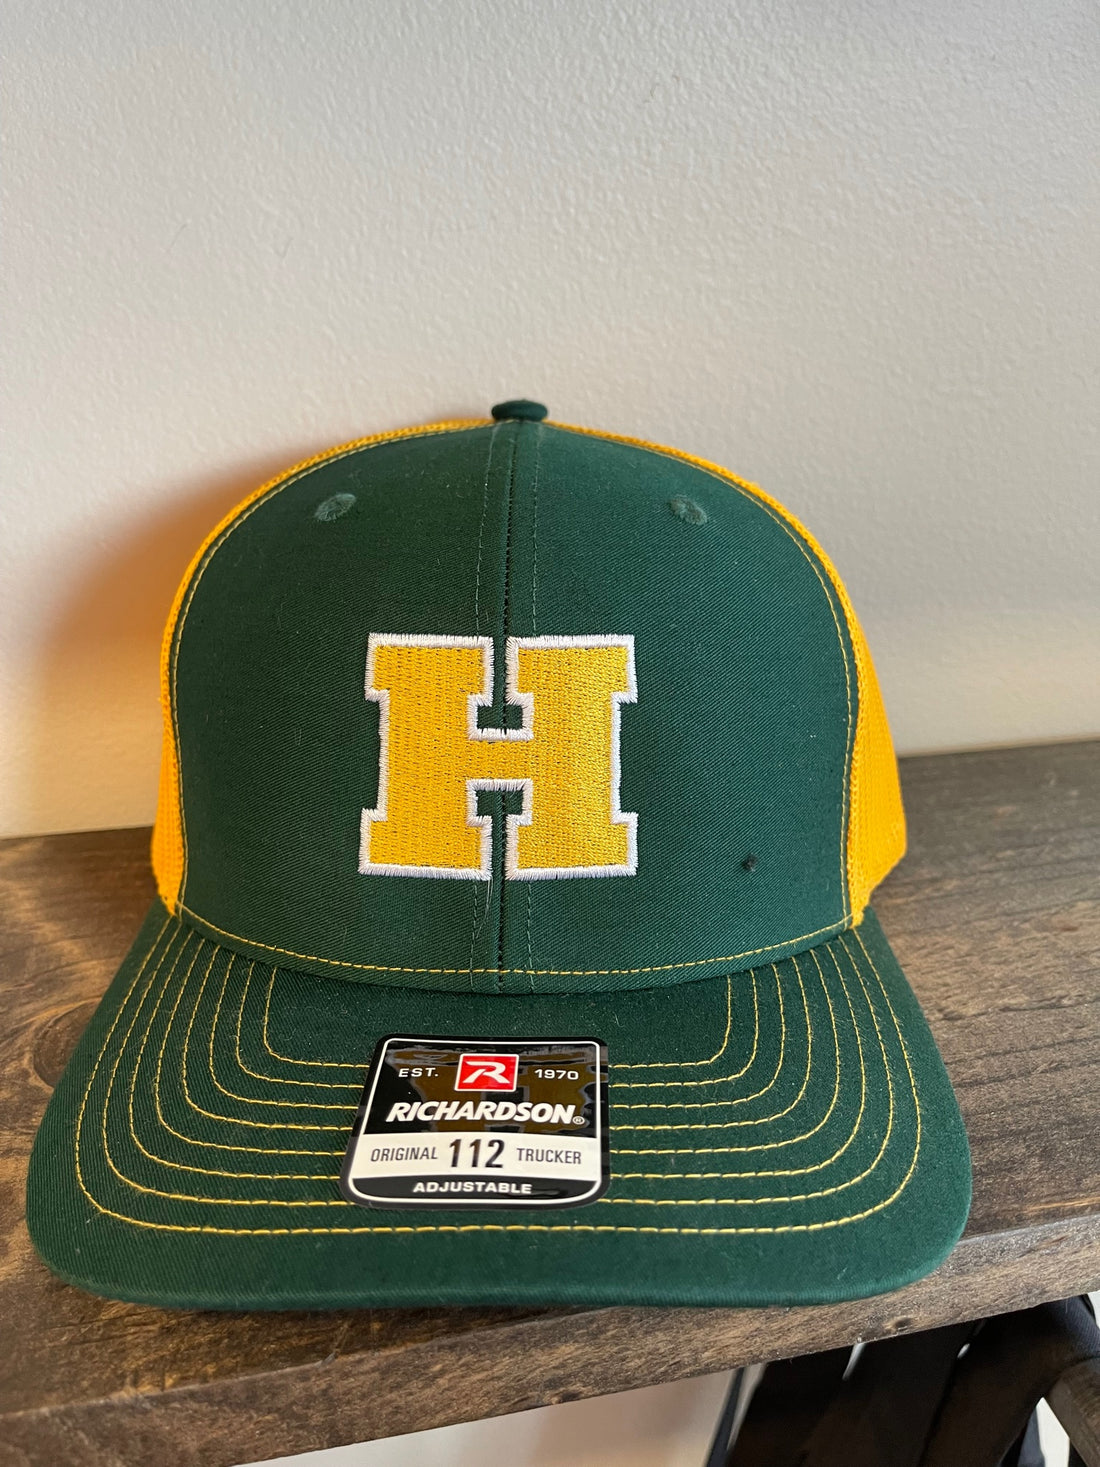 Howell "H" Richardson Trucker Hat